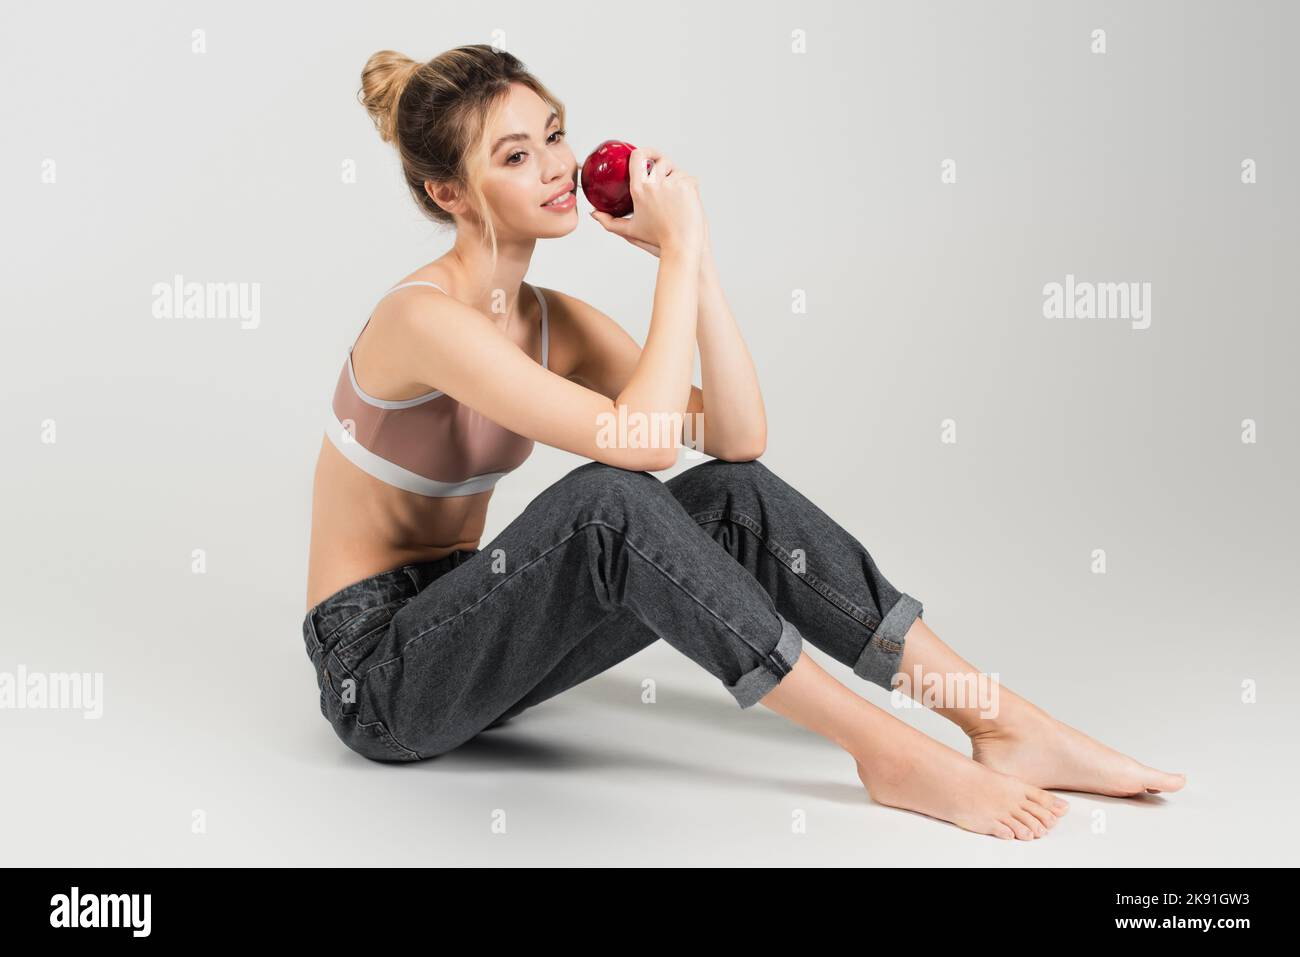 Junge Barfußfrau mit perfektem Körper und Haut, die mit frischem Apfel auf grauem Hintergrund sitzt Stockfoto